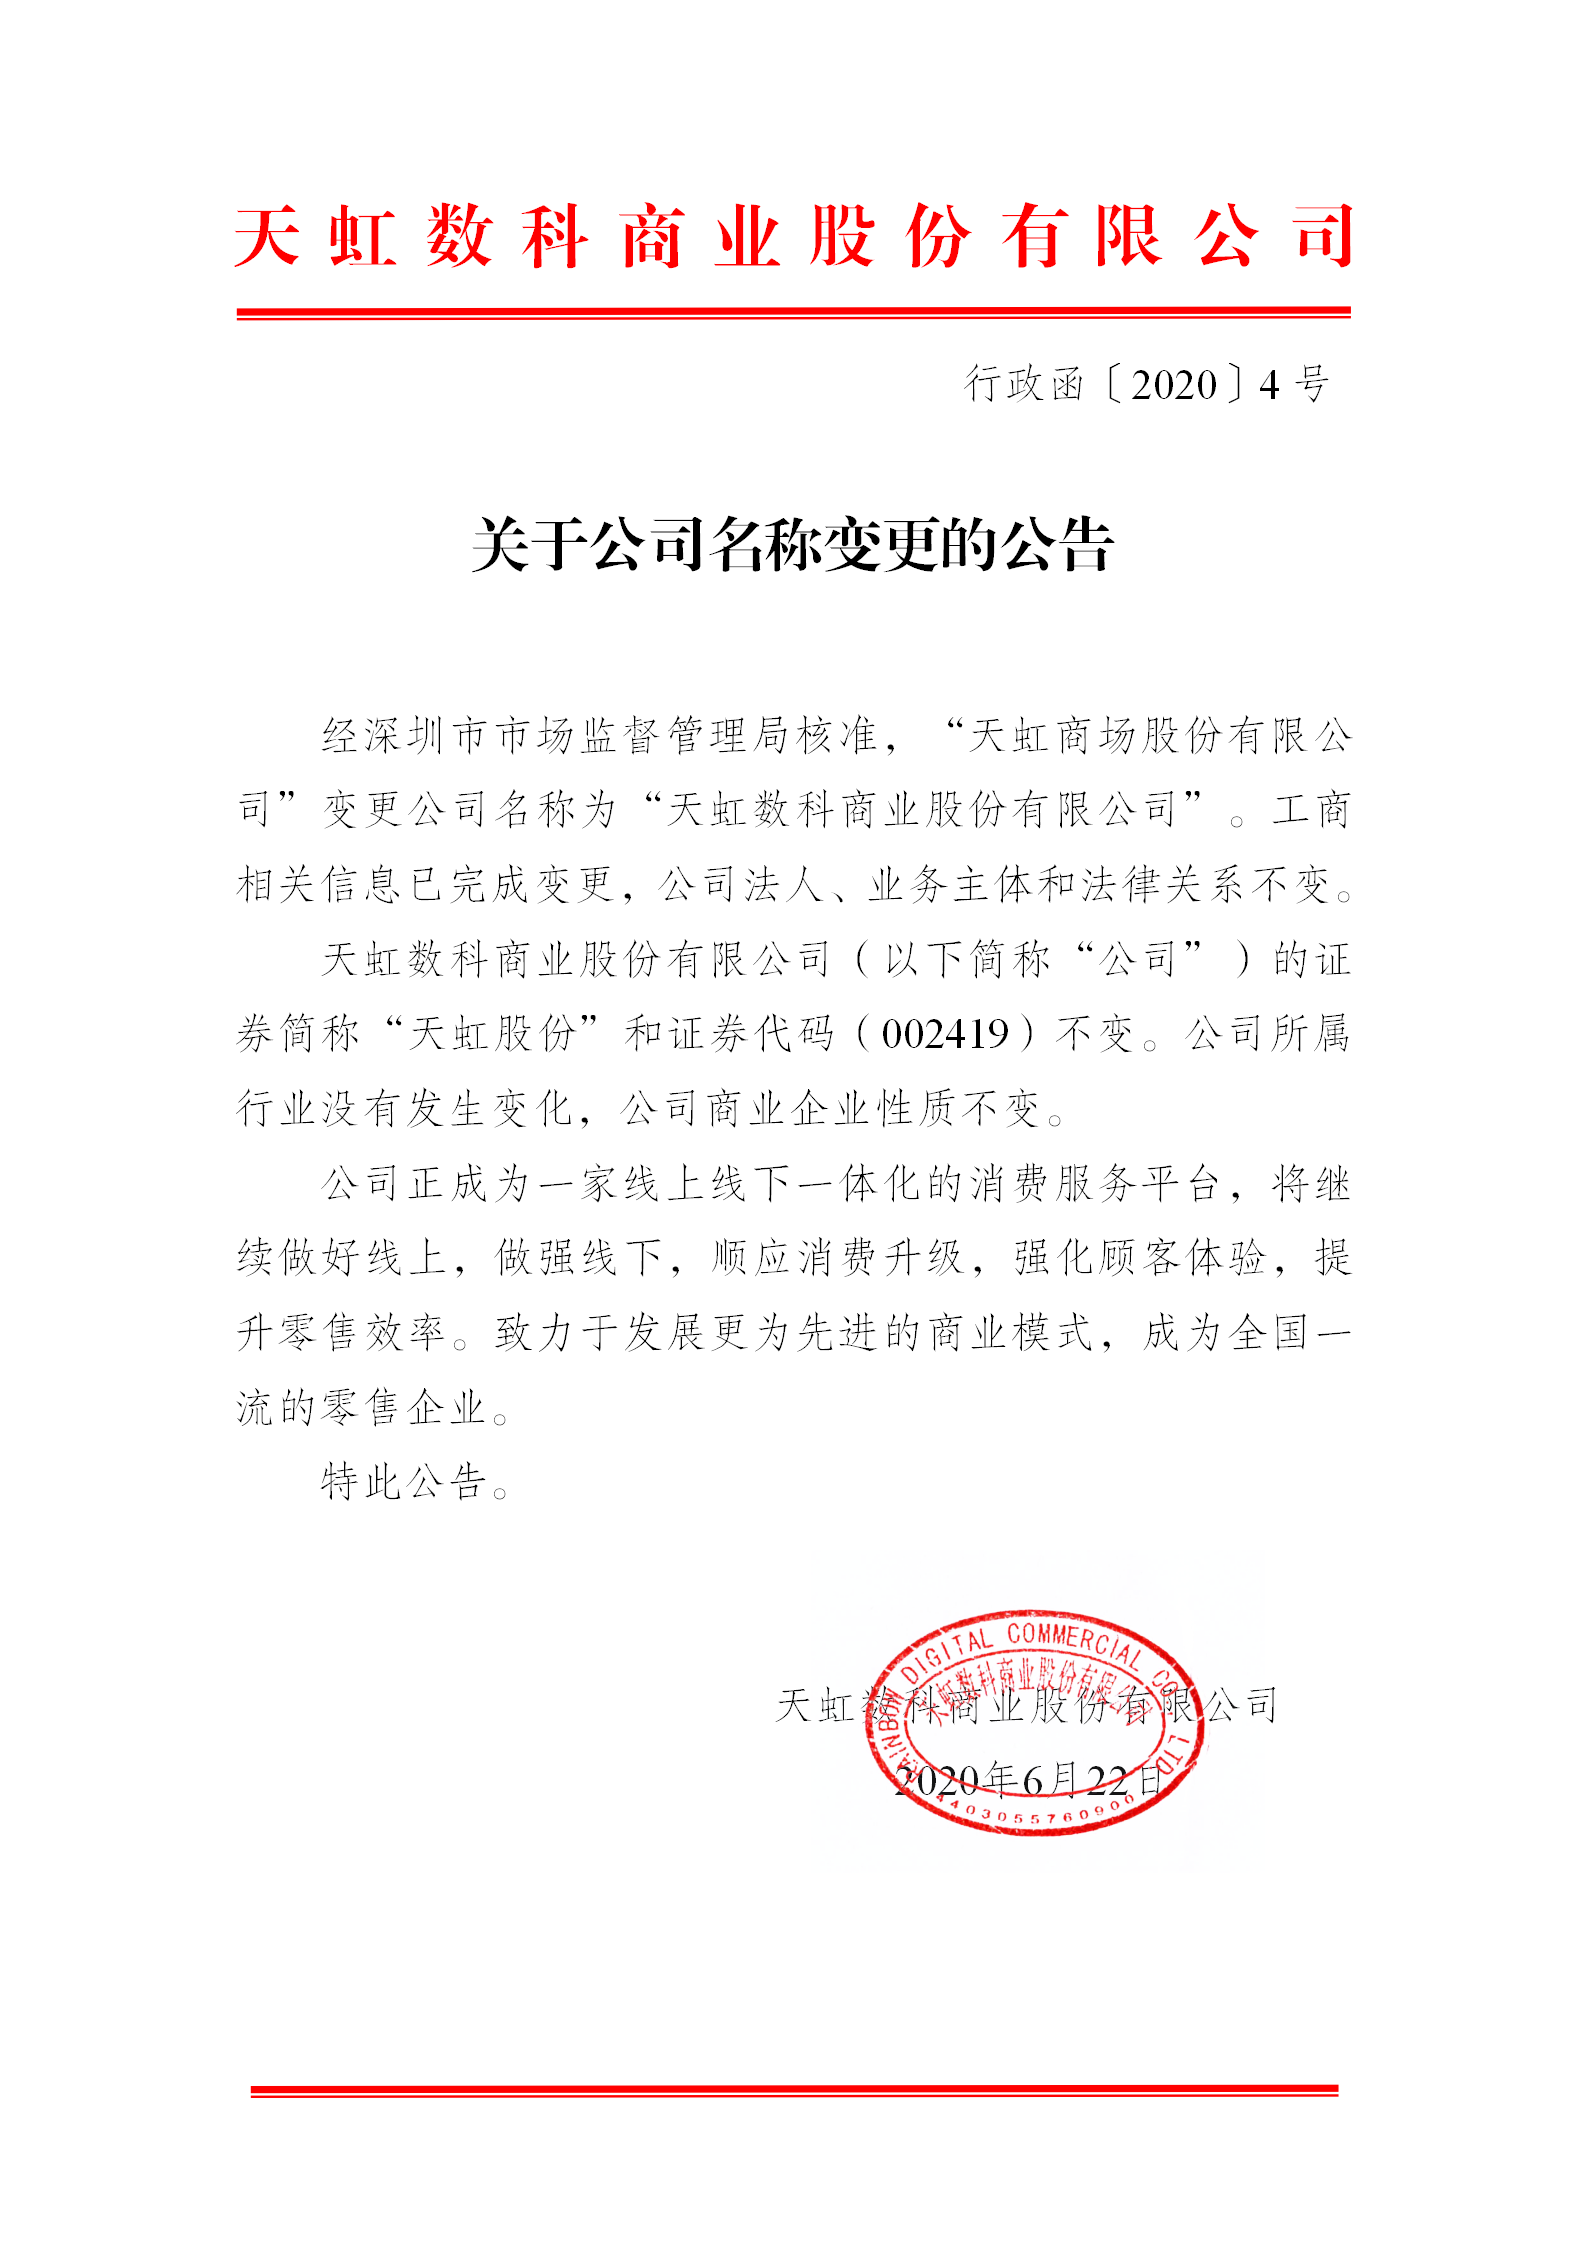 天虹商场股份有限公司正式更名天虹数科商业股份有限公司